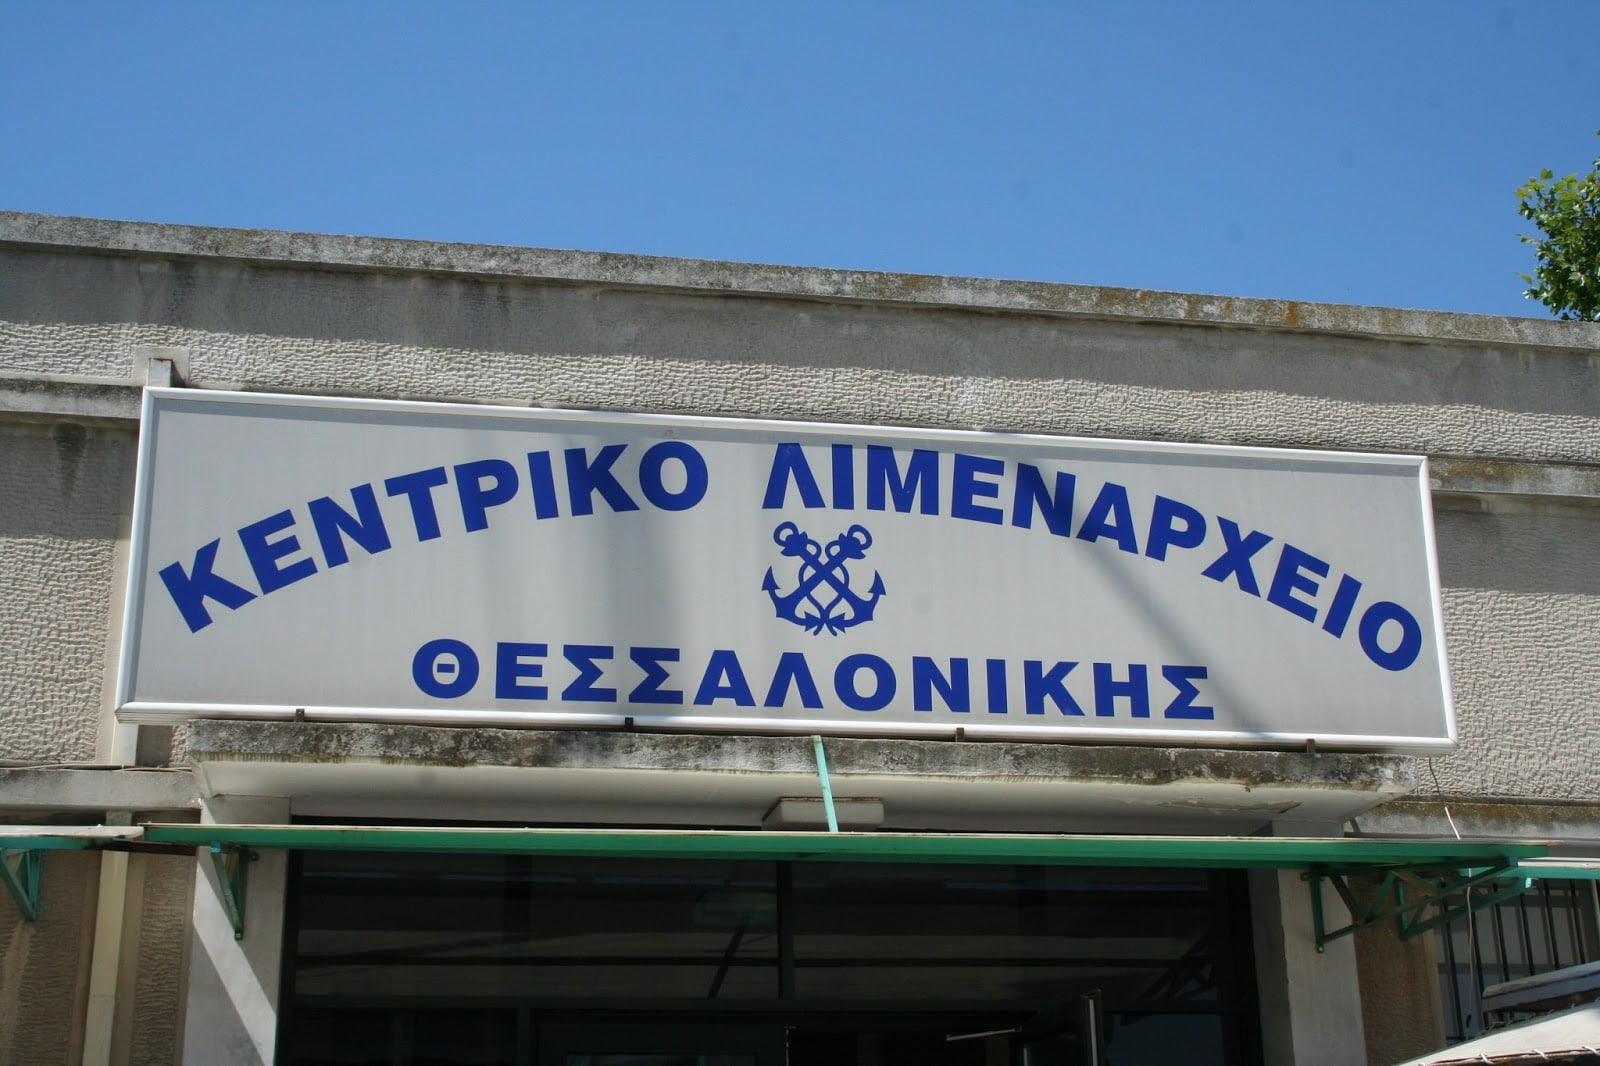 6 προσλήψεις στο Κεντρικό Λιμεναρχείο Θεσσαλονίκης